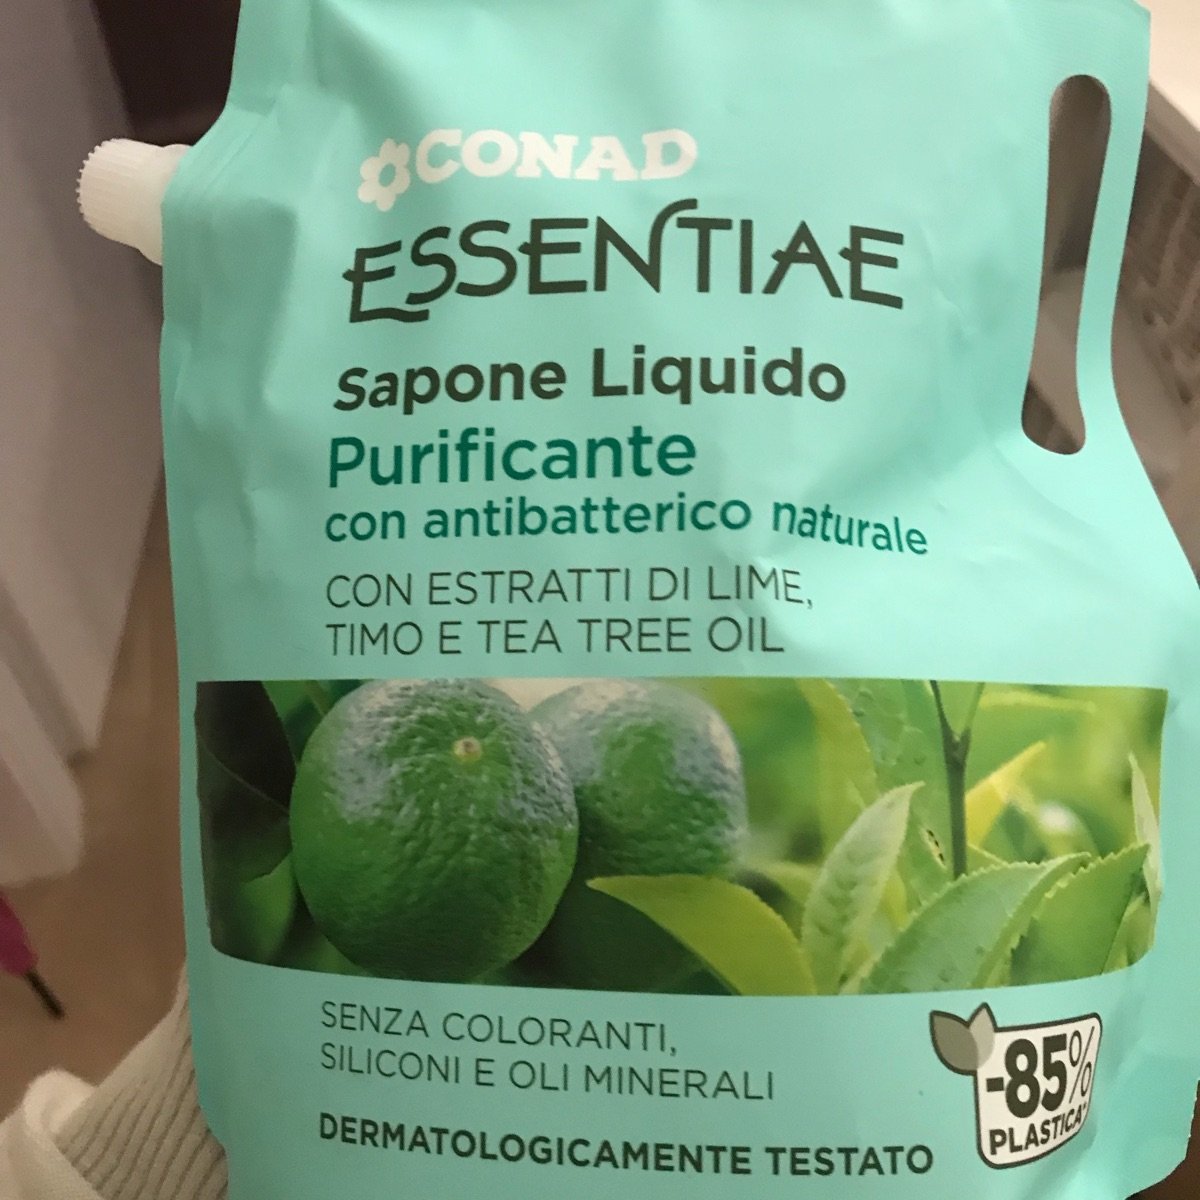 Conad Essentiae Sapone liquido Purificante Review | abillion